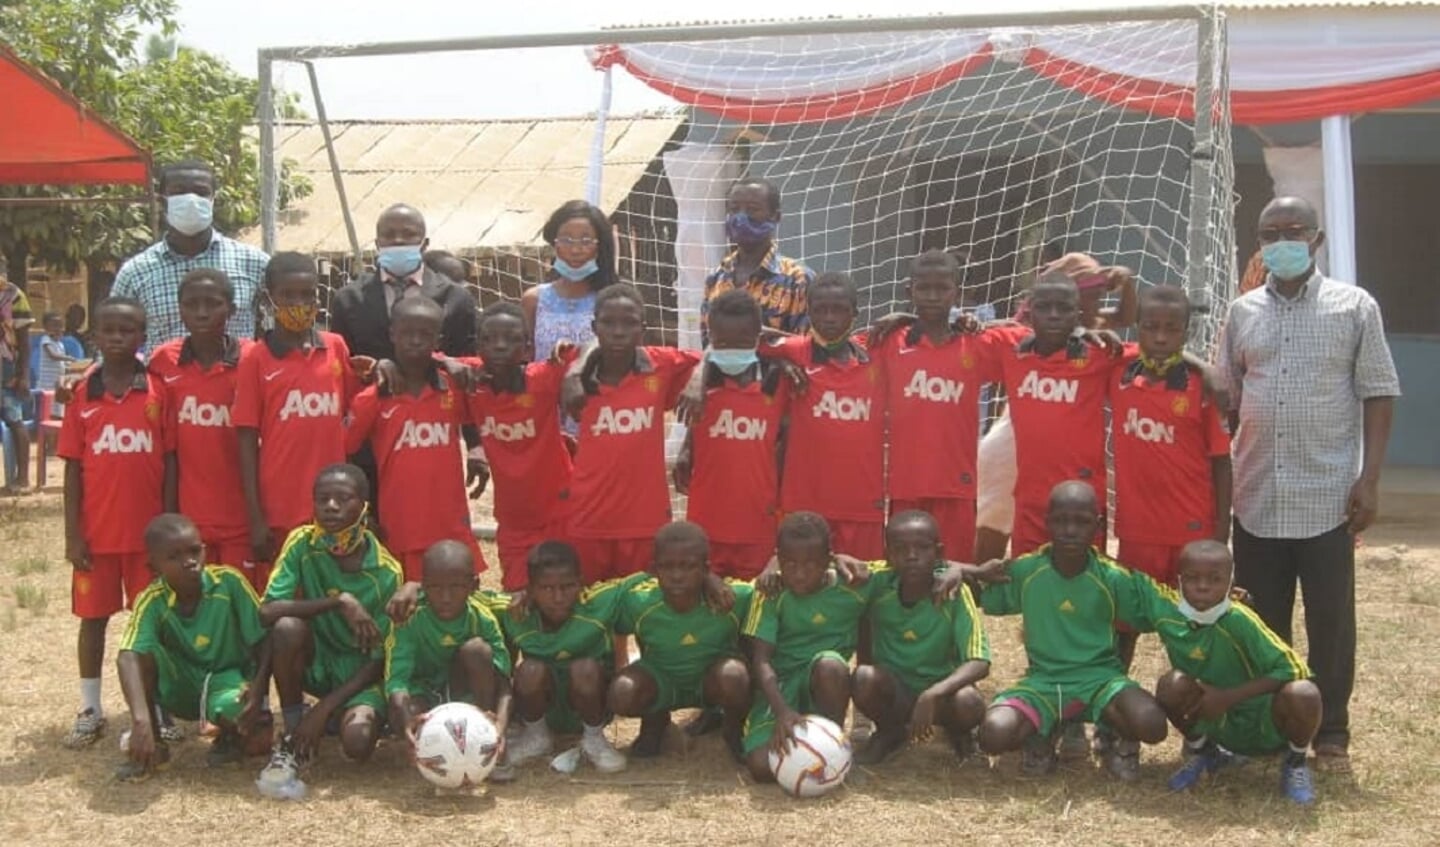 Ghanese kinderen poseren graag voor de nieuwe goals in hun nieuwe shirts. Rechtsboven op de achtergrond staat het nieuwe kleutergebouw.

